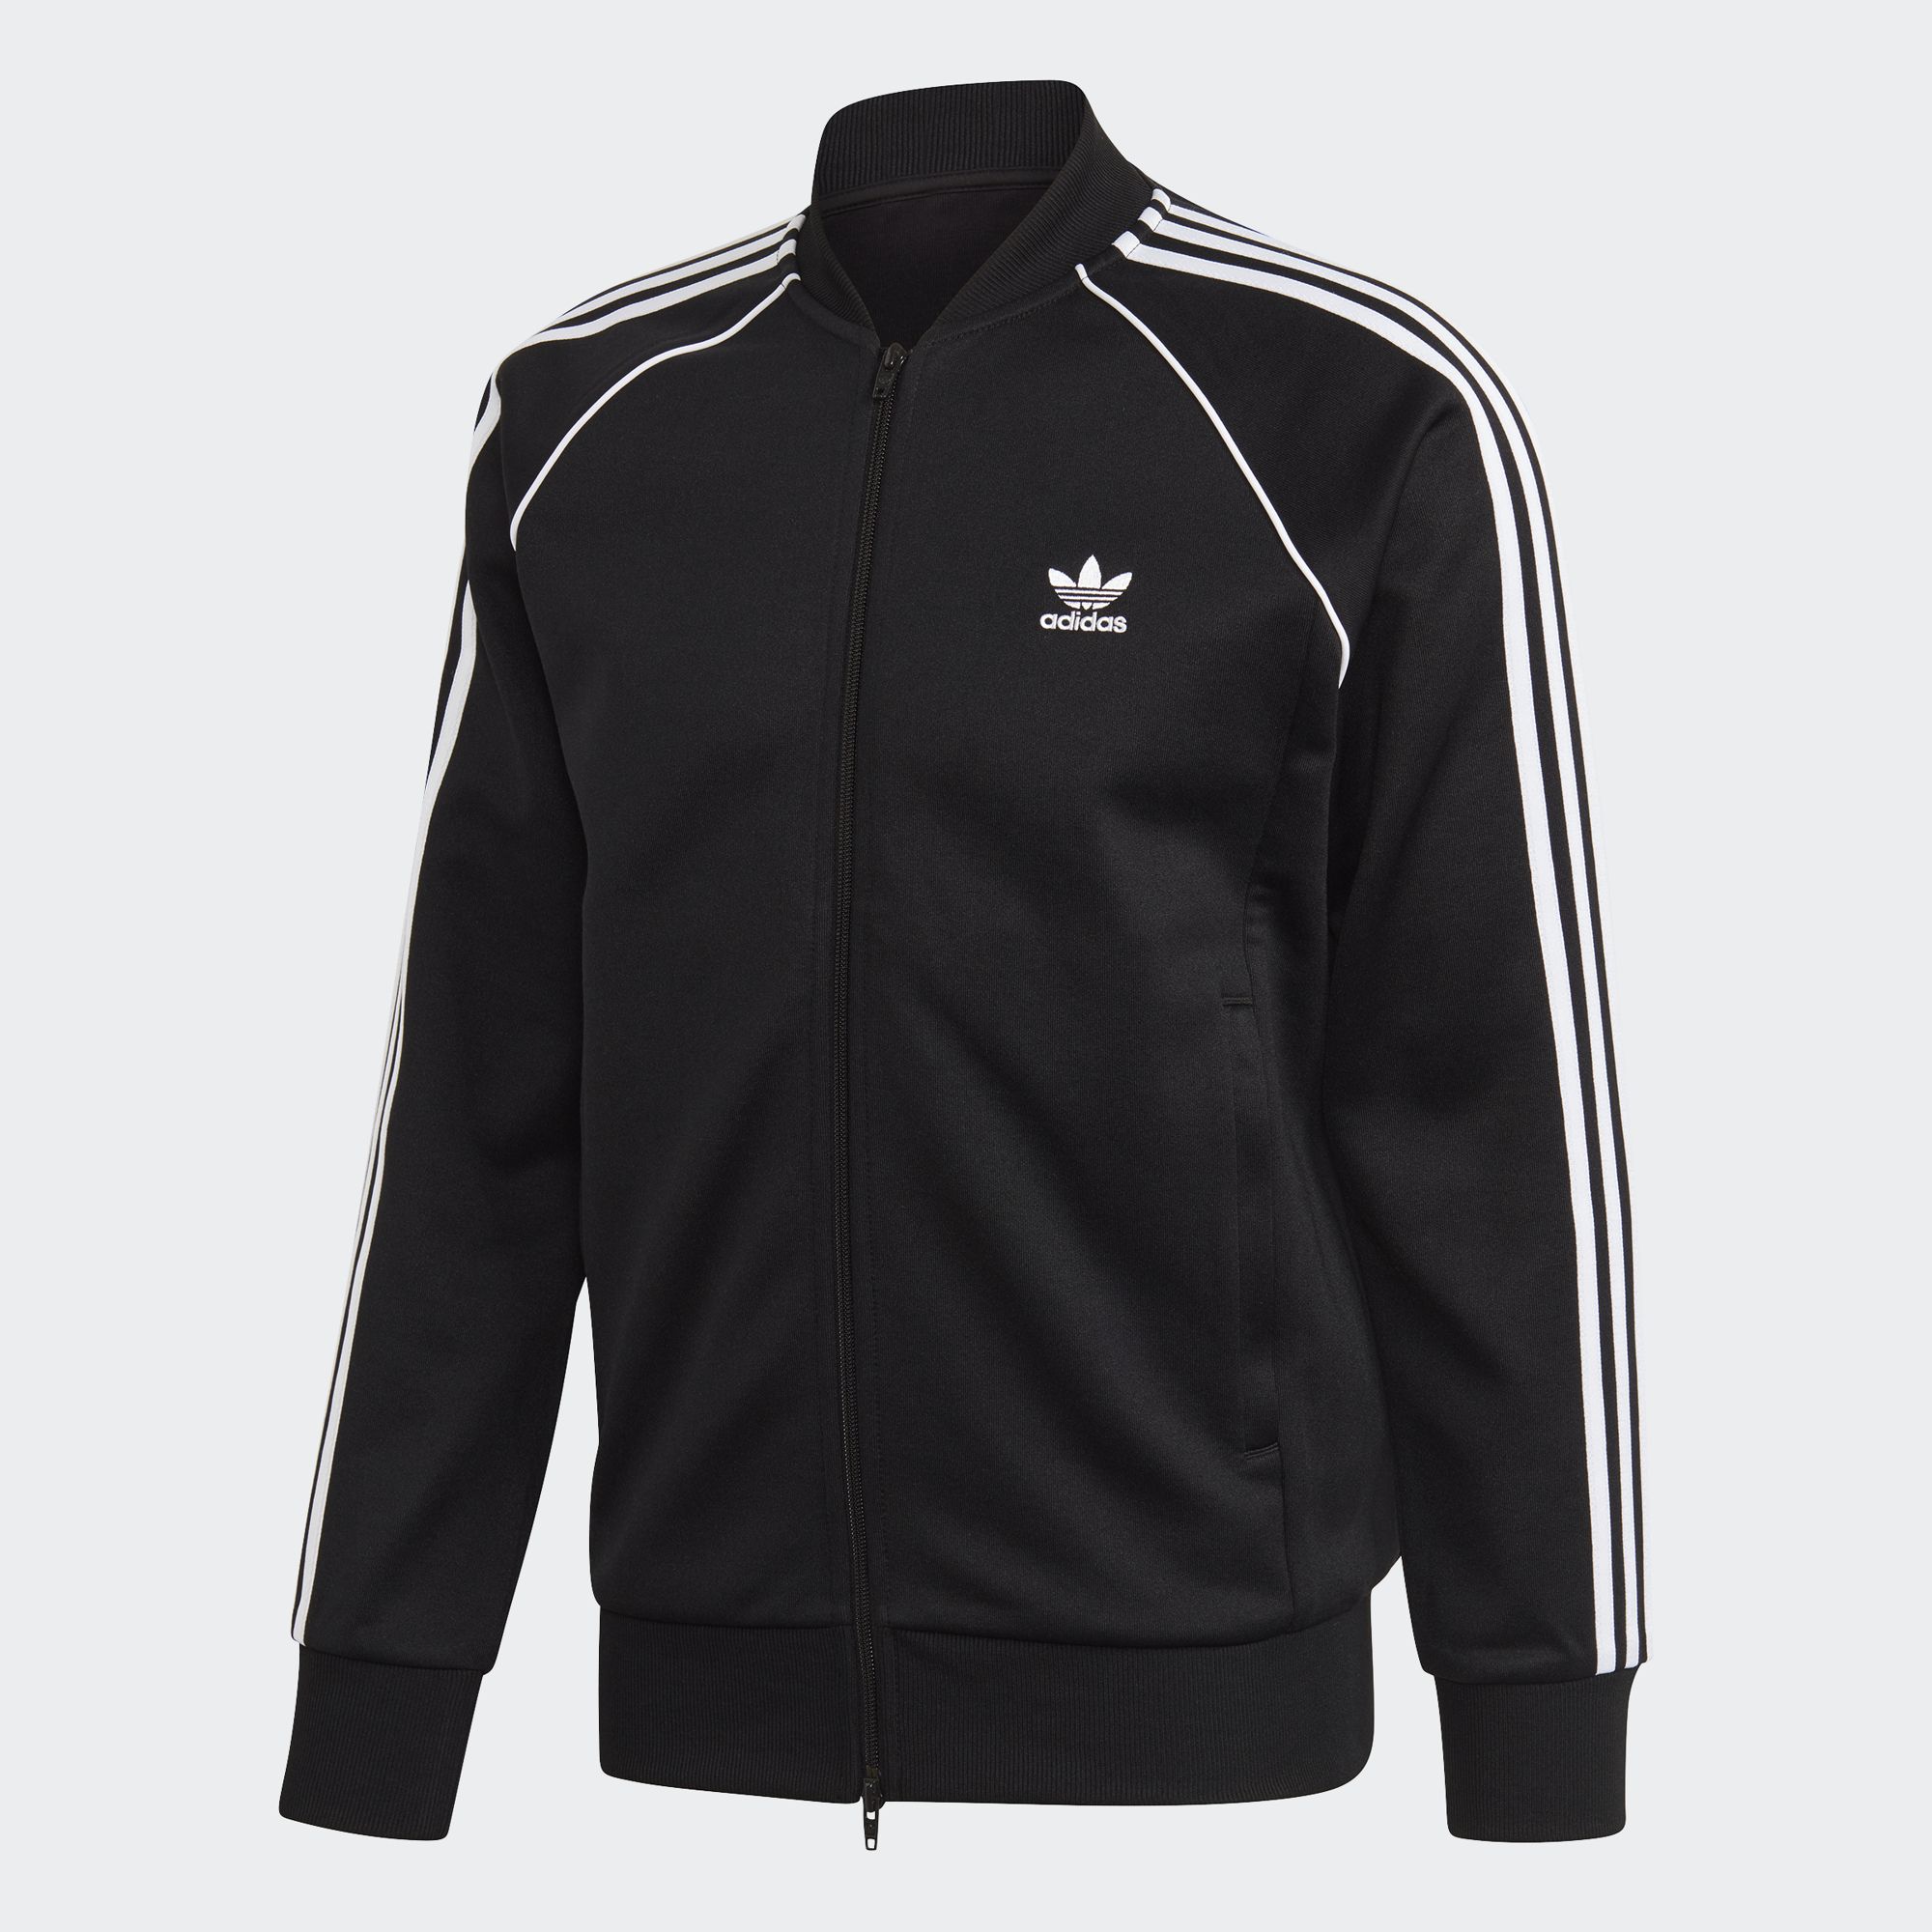 Adidas Jackets \u0026 Coats Online | lazada.sg